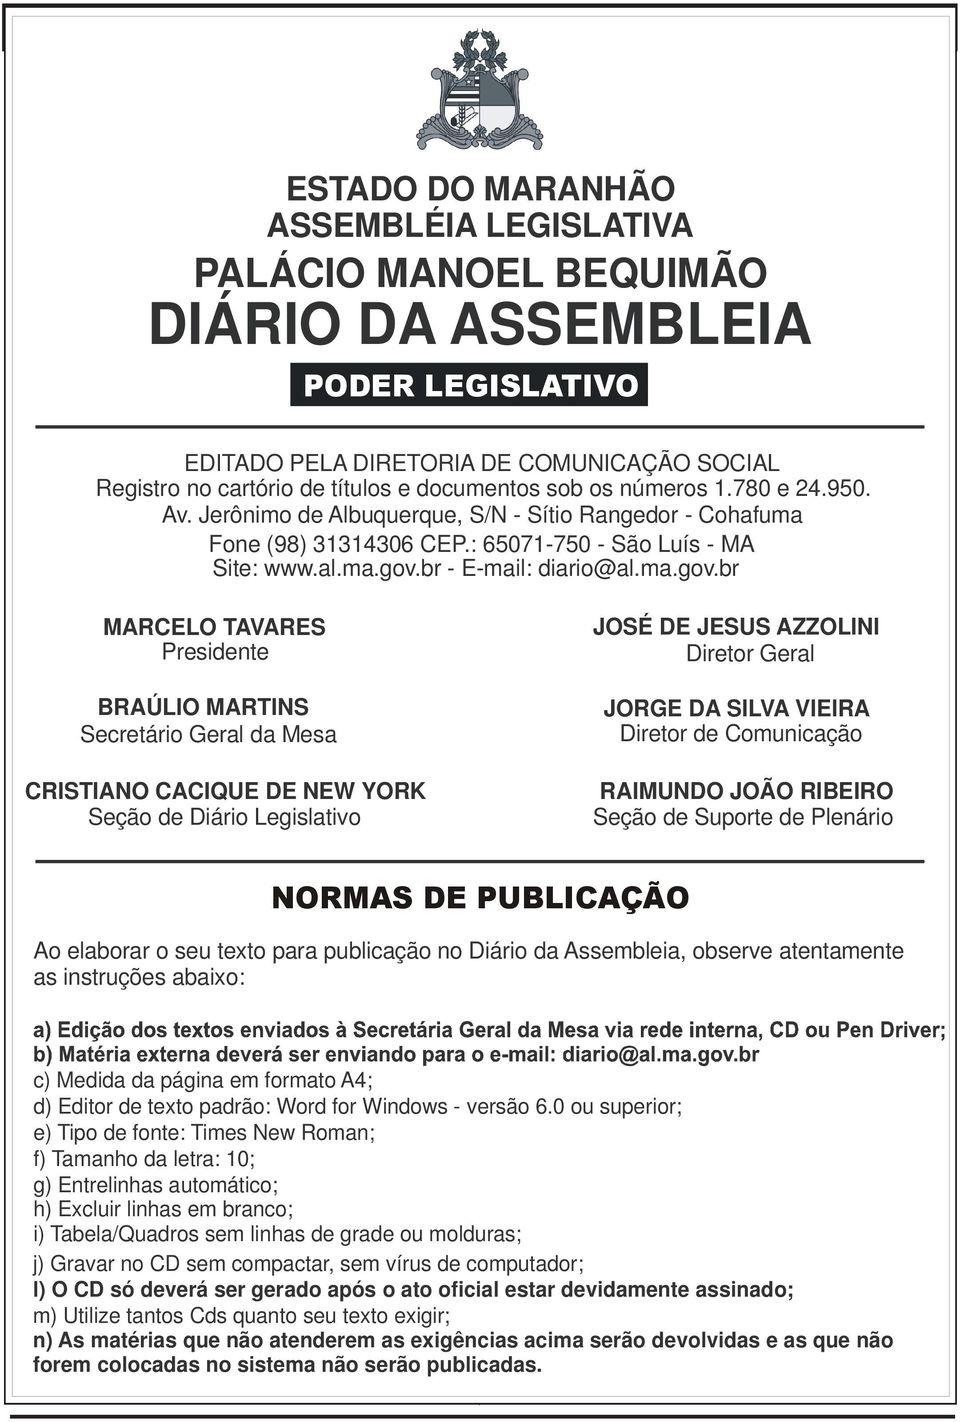 br - E-mail: diario@al.ma.gov.